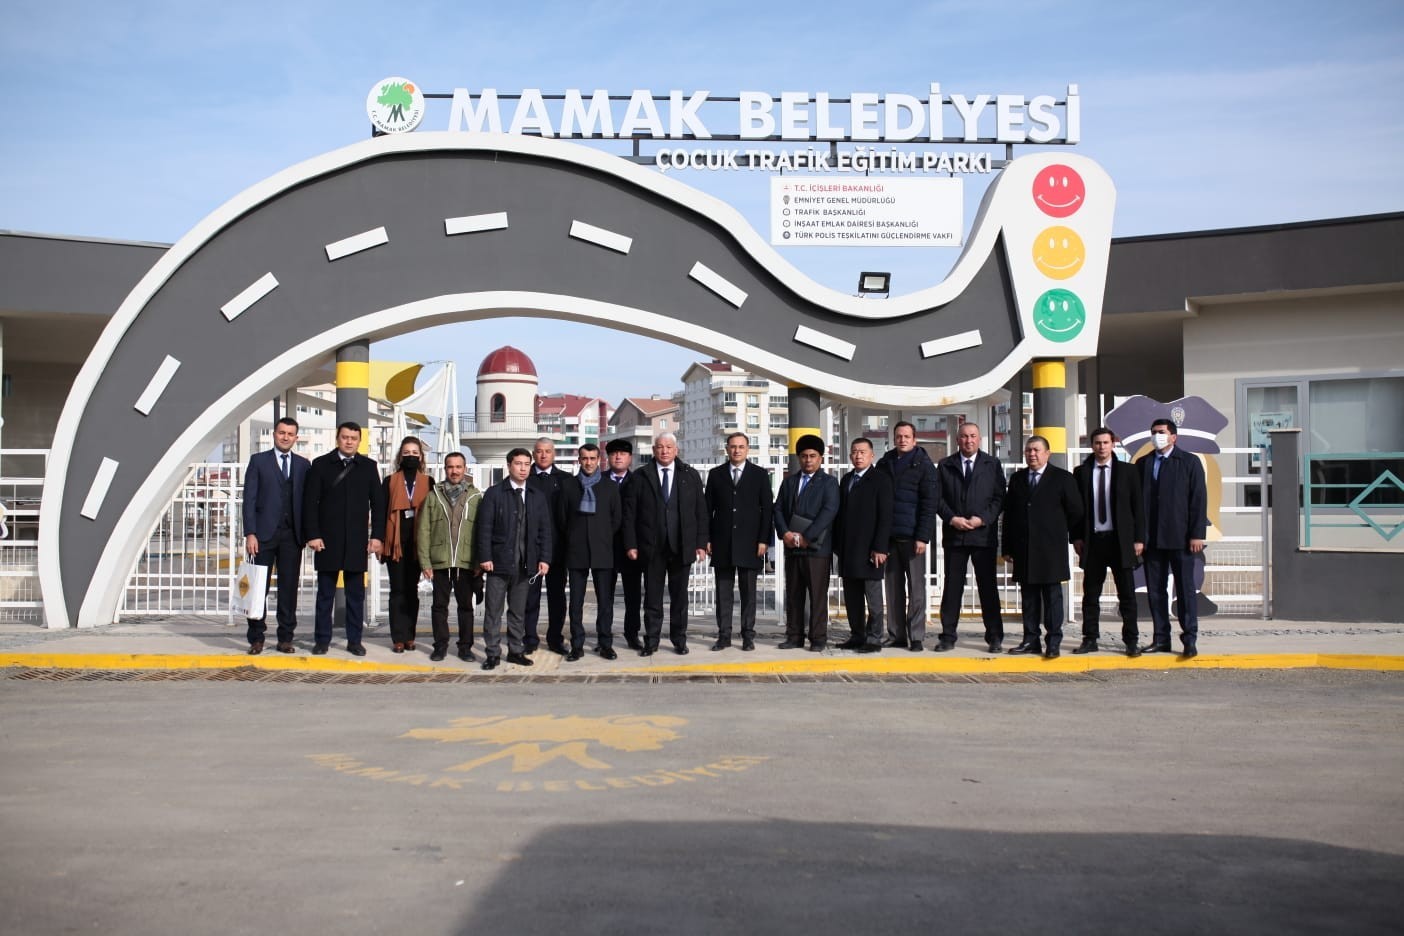 Özbekistan Emniyet Genel Müdürlüğü çalışanları, trafik eğitim parkını ziyaret etti #ankara